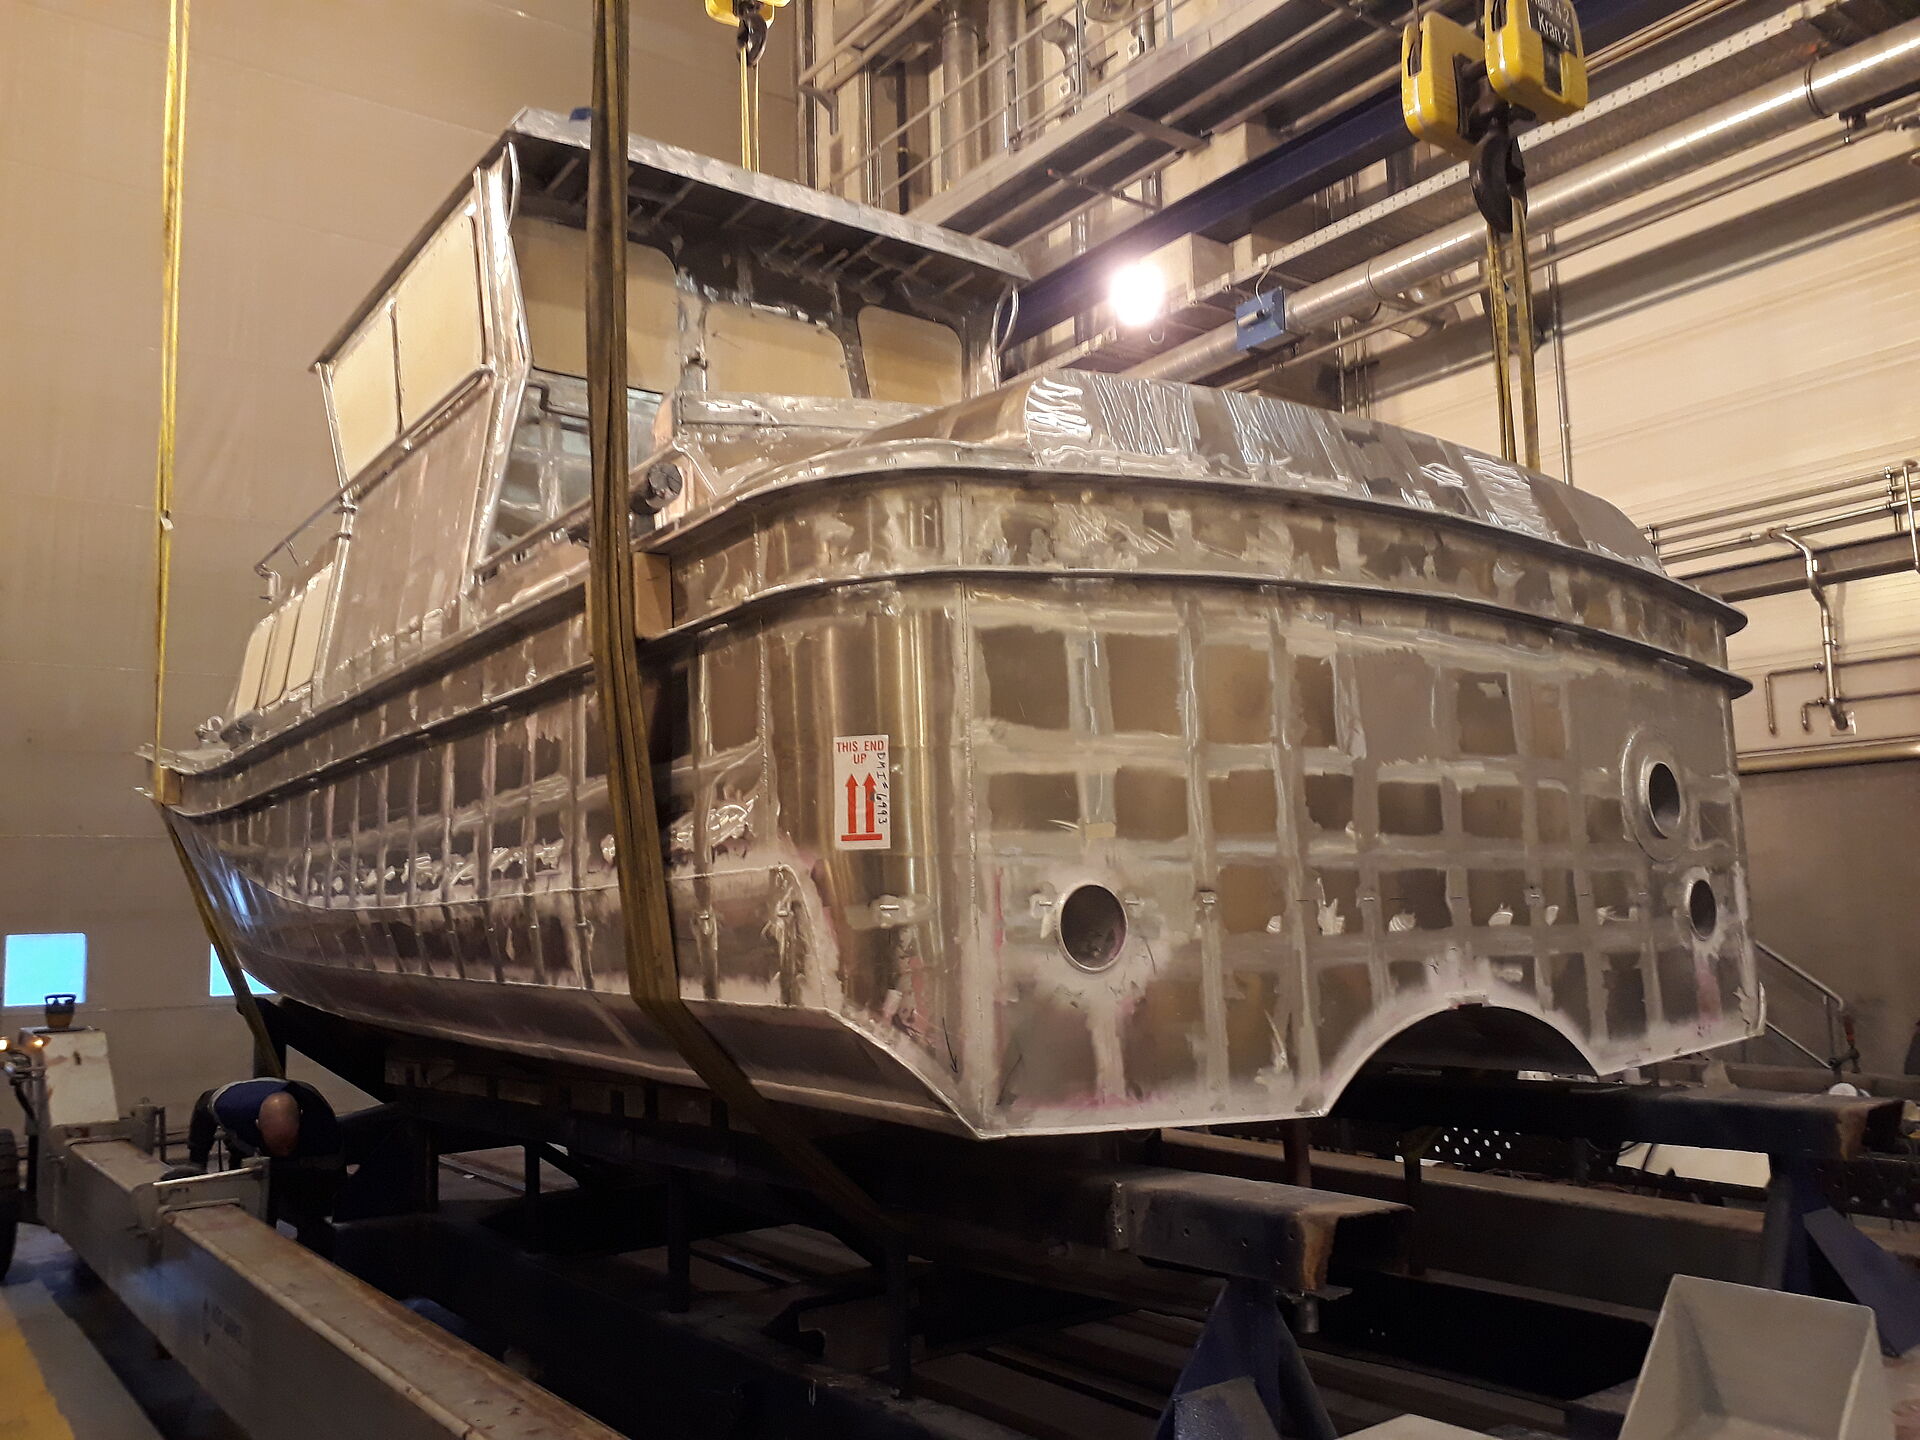 Ansicht des Rohbaus eines Seenotrettungsbootes in euiner Werfthalle. Der unlackierte Körper zeigt blankes Aluminium.